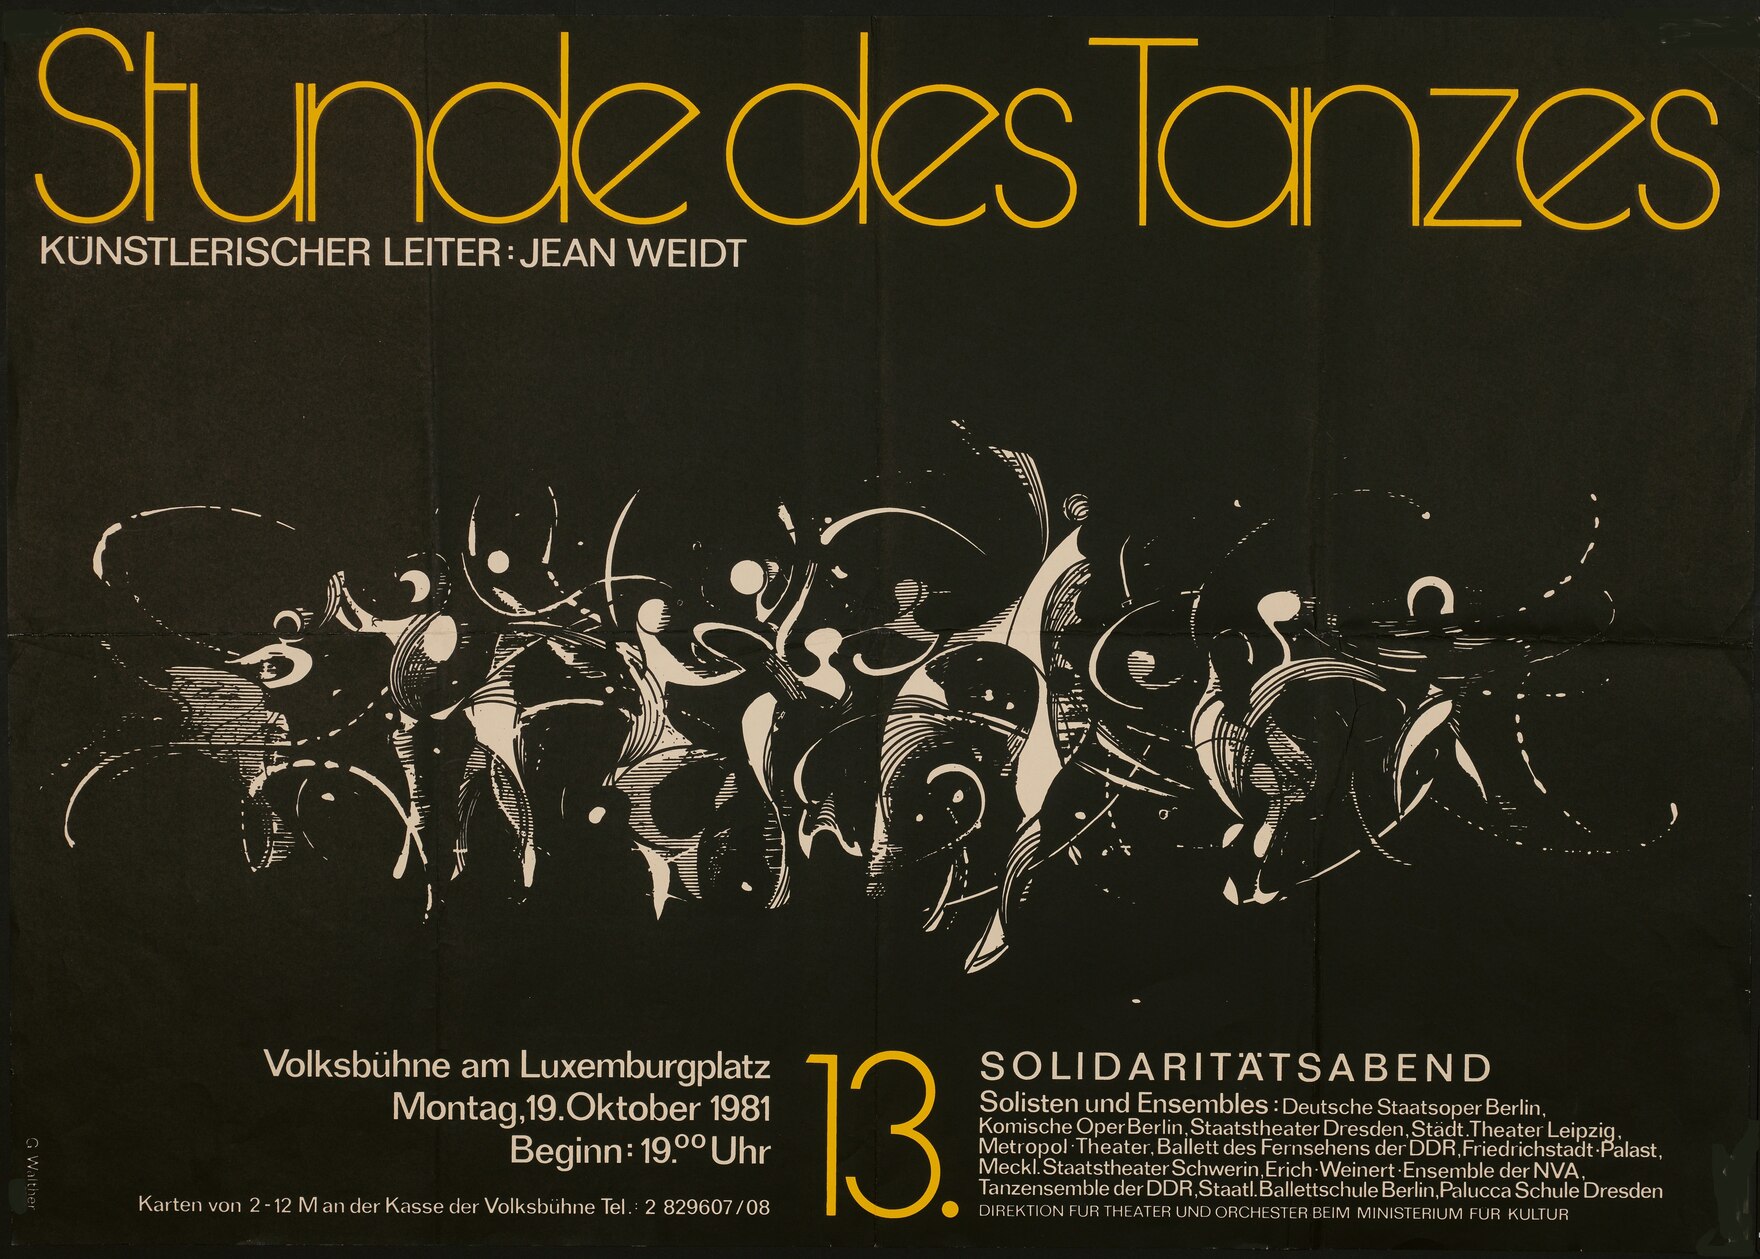 Ein Werbeplakat für eine Tanzveranstaltung an der Volksbühne mit dem Titel "Stunde des Tanzes", künstlerischer Leiter: Jean Weidt. Die Illustration zeigt weiße, stilisiert dargestellte Tanzfiguren auf schwarzem Grund.